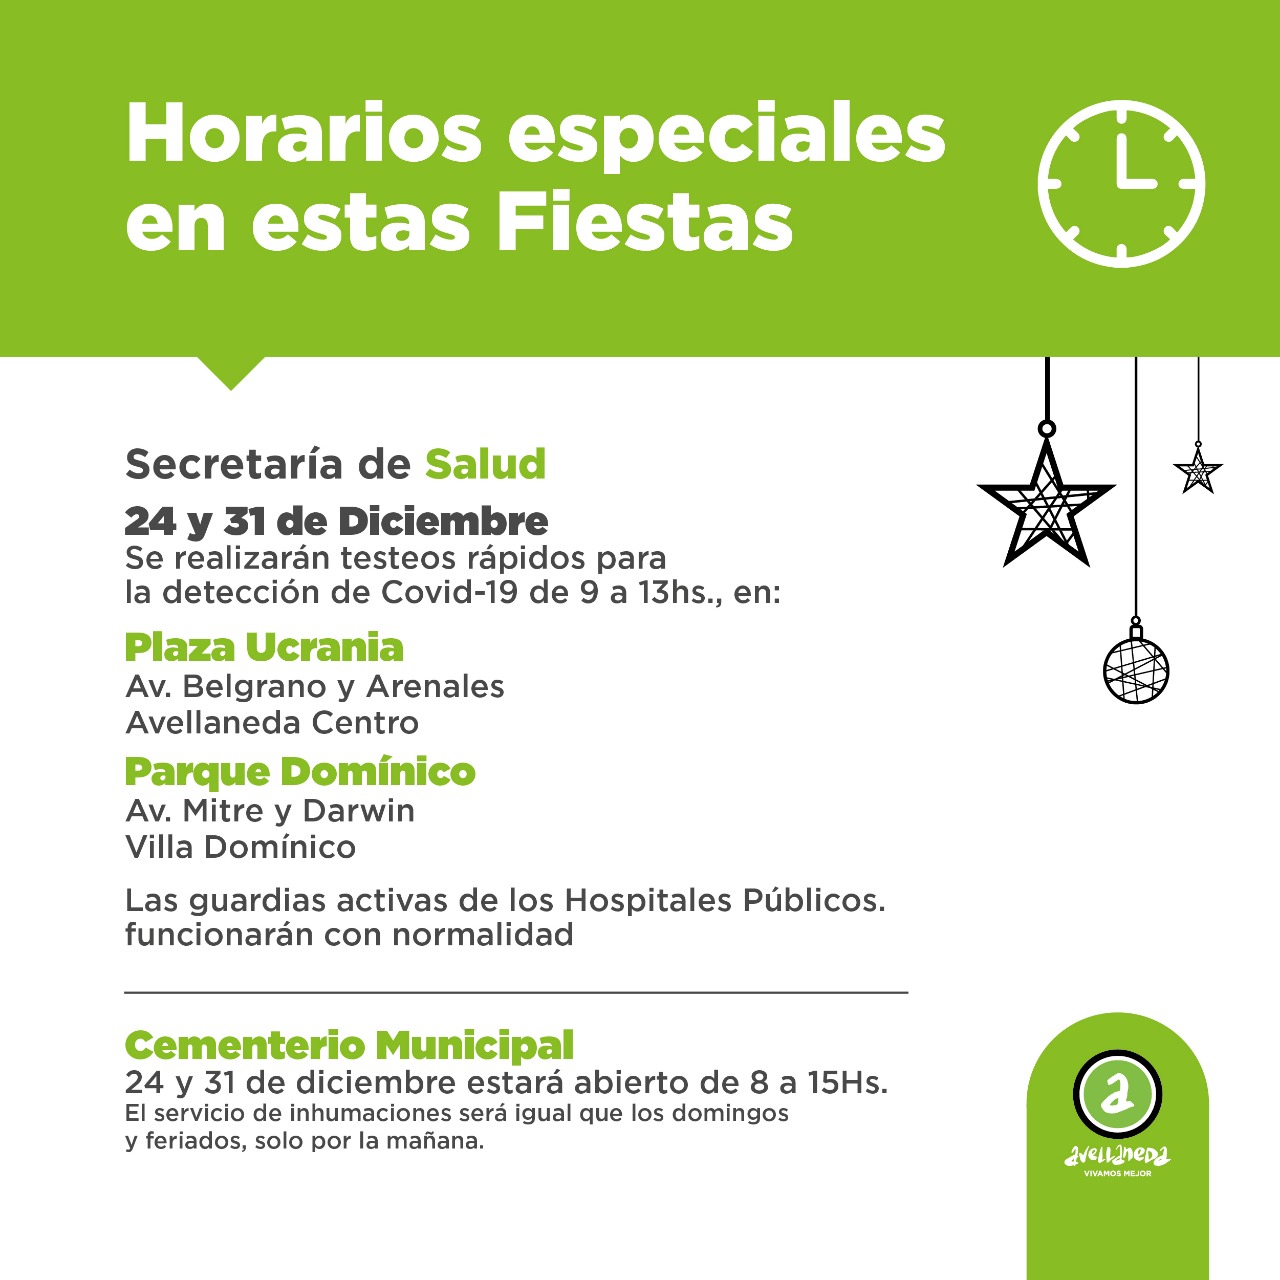 El municipio de Avellaneda informa los horarios especiales en estas Fiestas